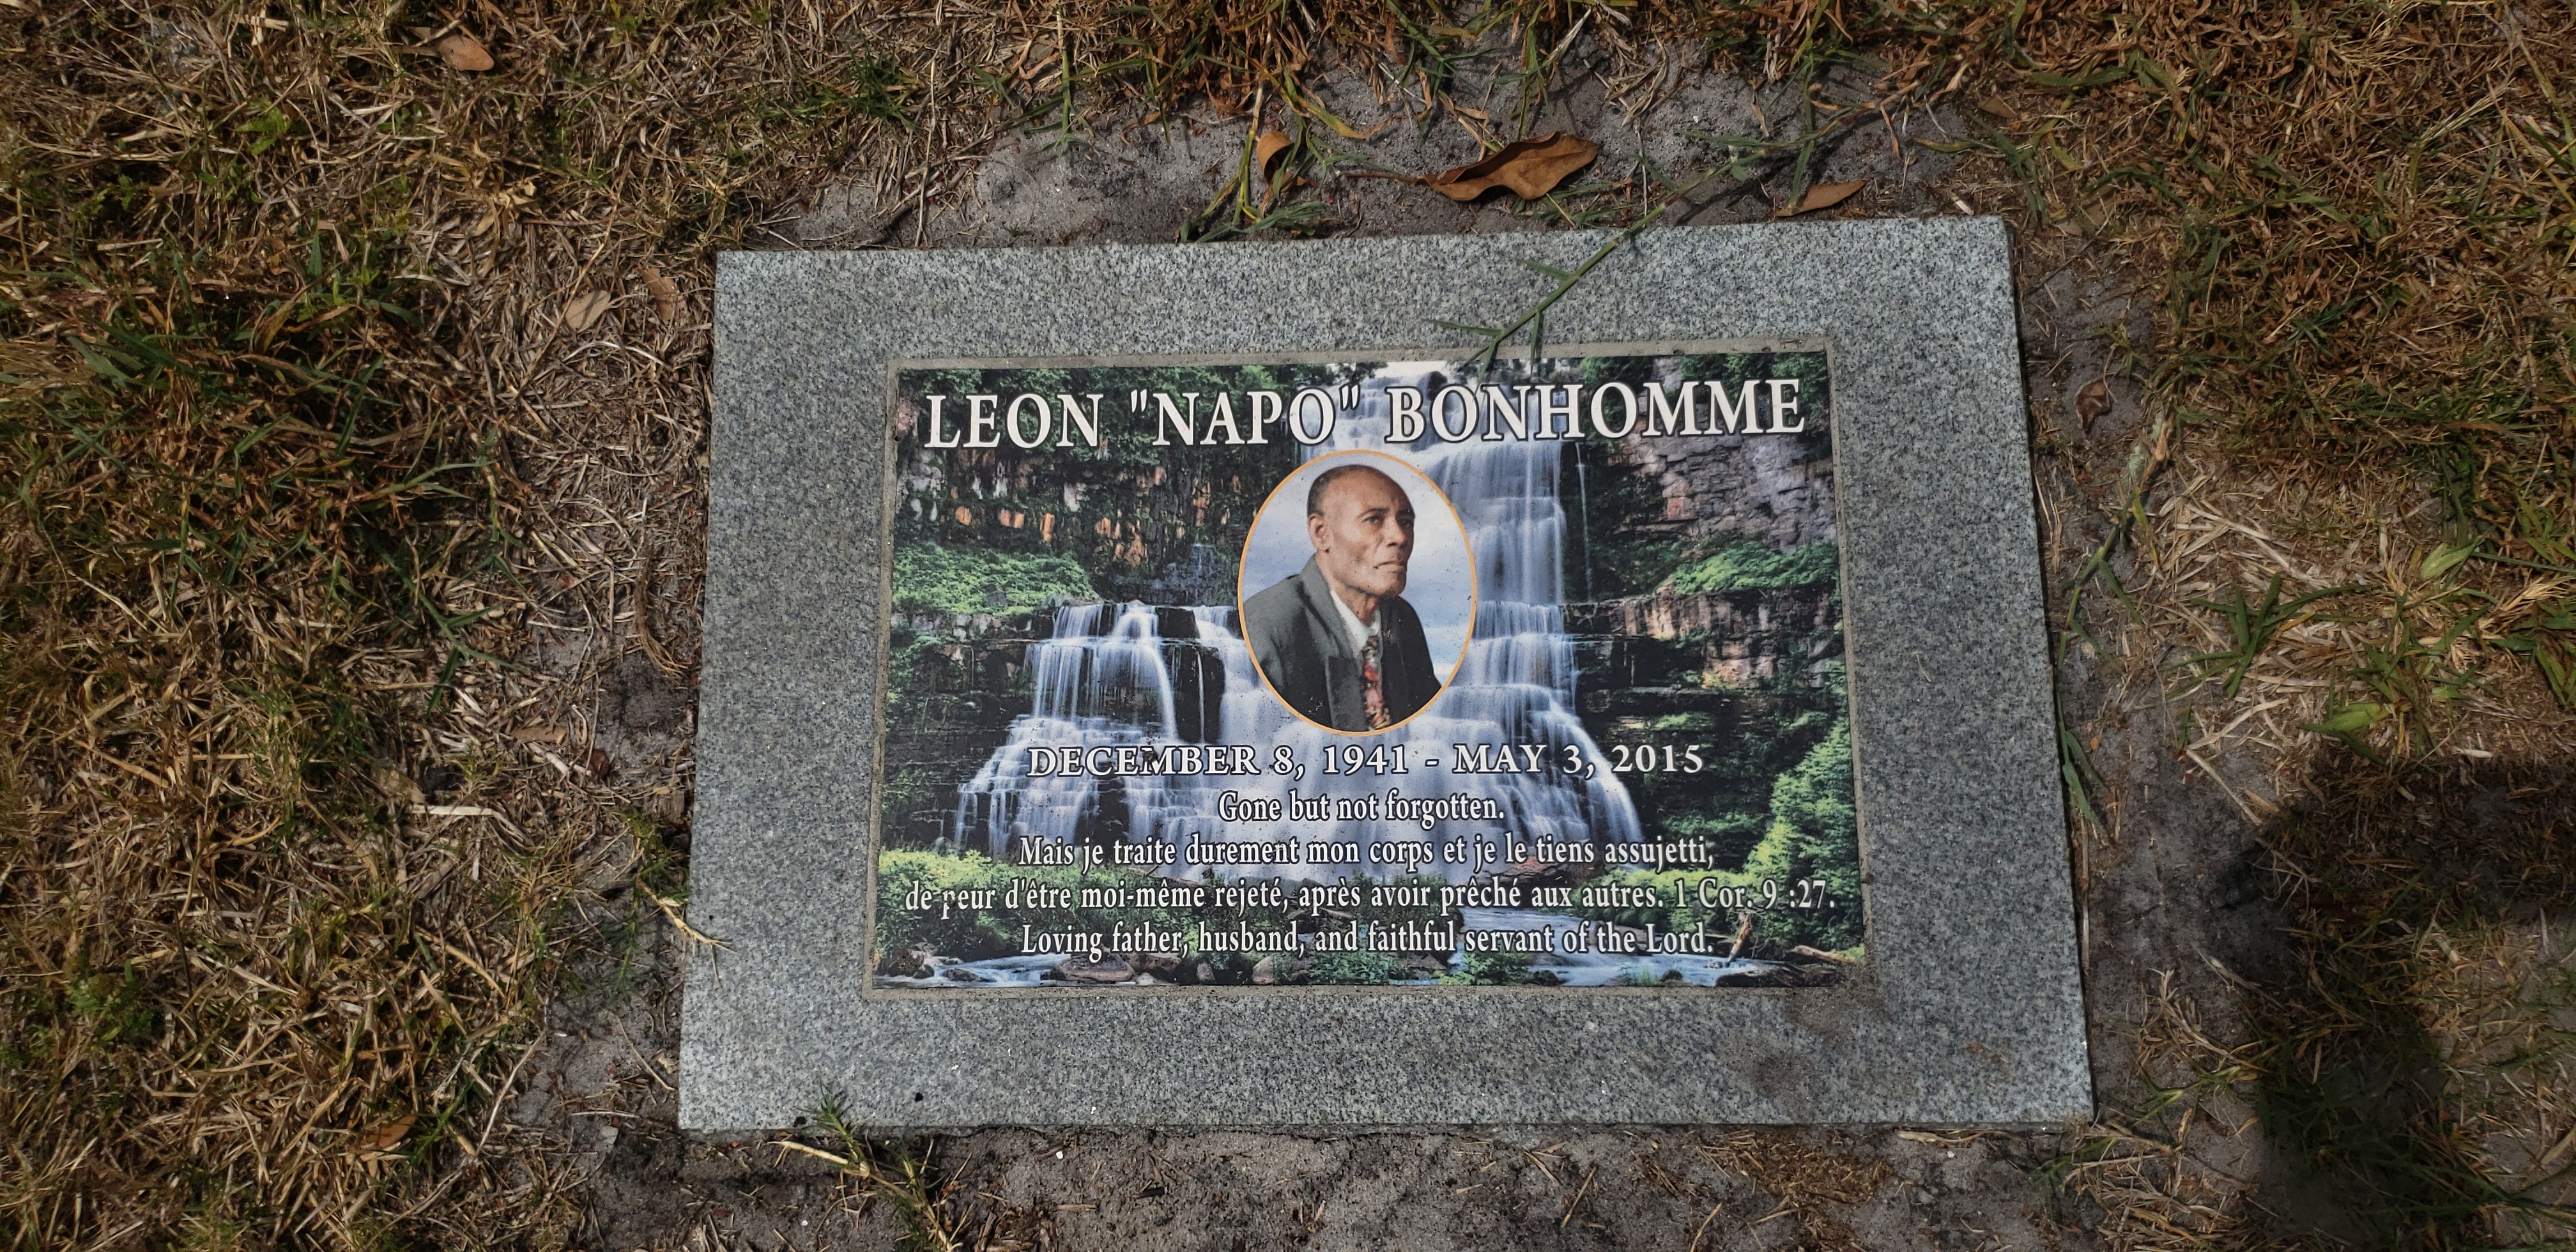 Leon "Napo" Bonhomme